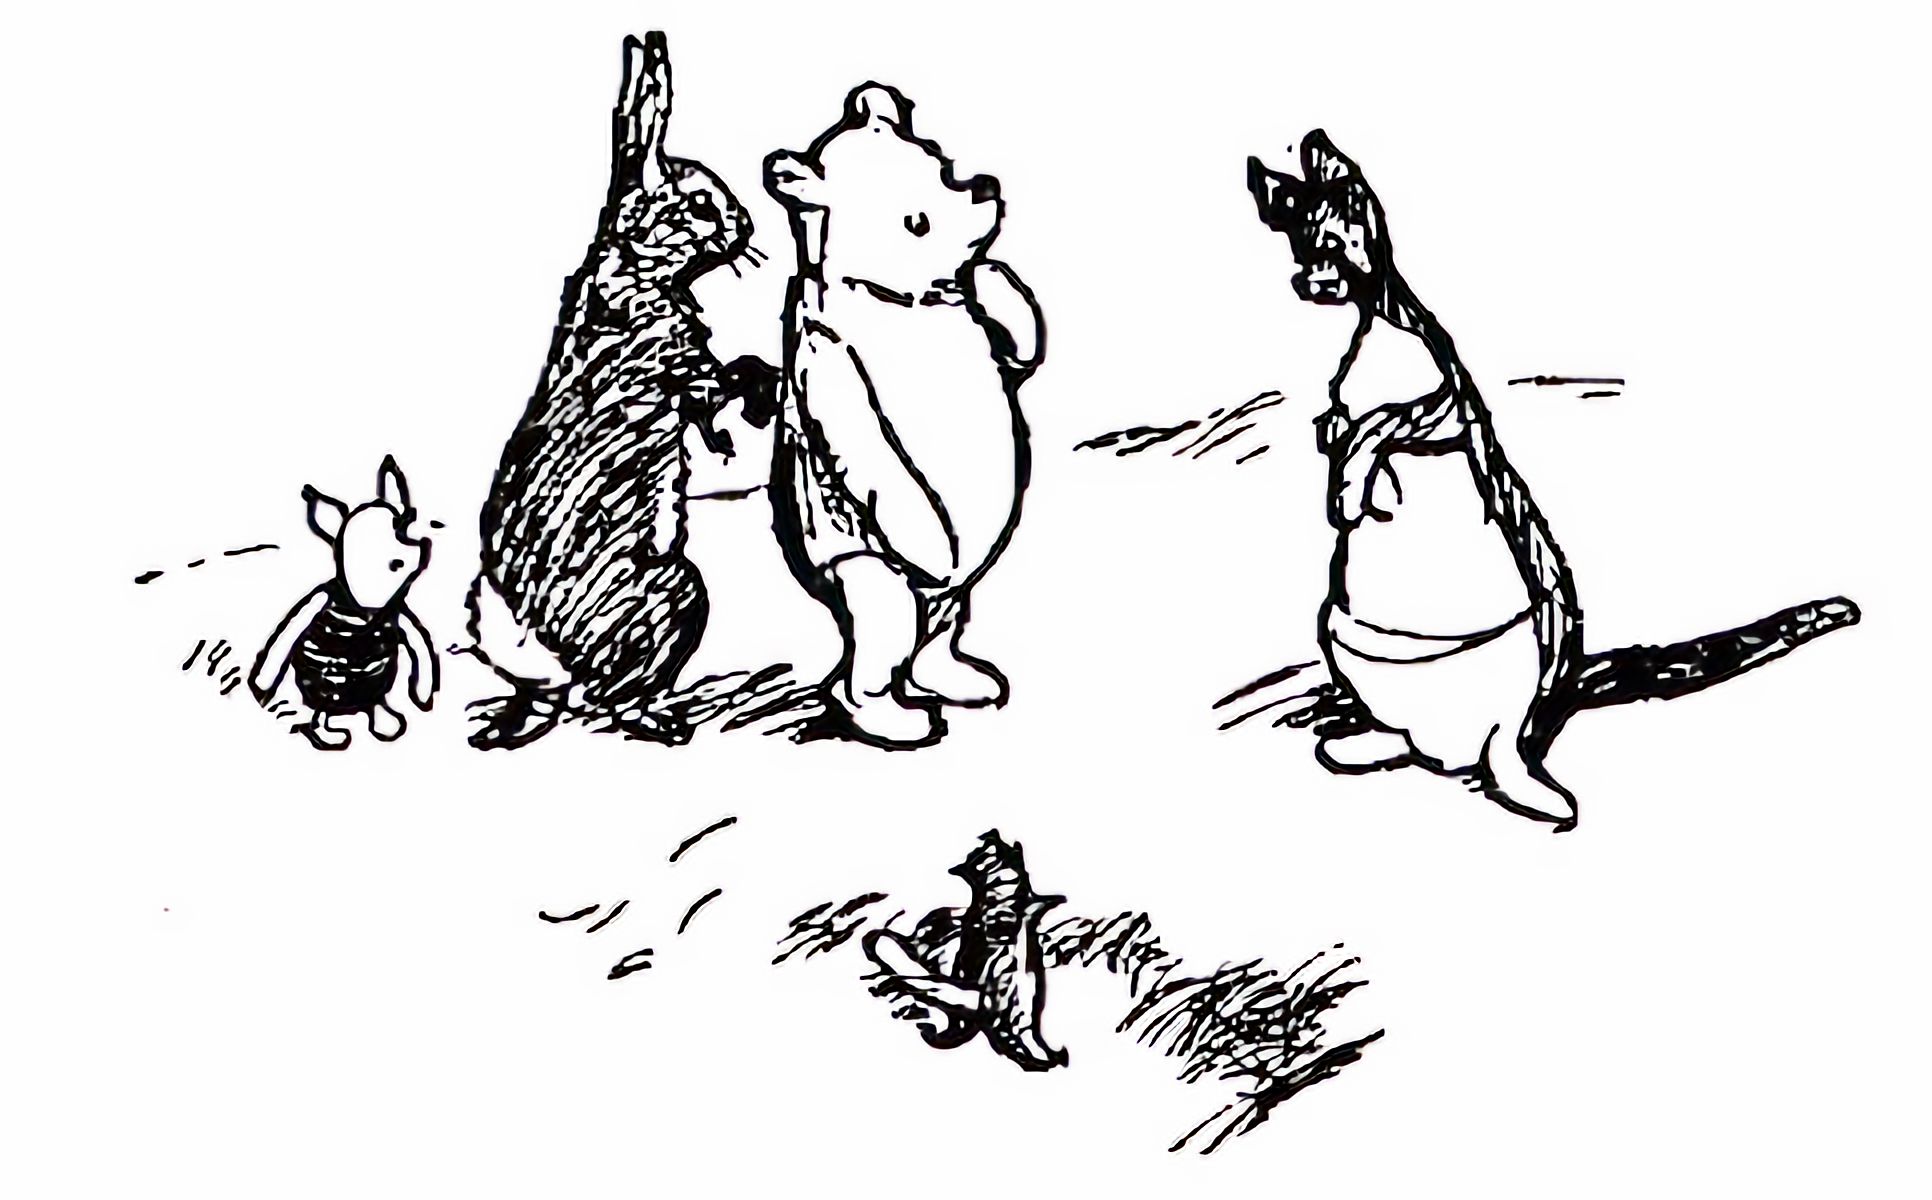 Bức vẽ Winnie the Pooh sẽ được bán đấu giá ngày 27-9 tới. Ảnh: Wikimedia Commons